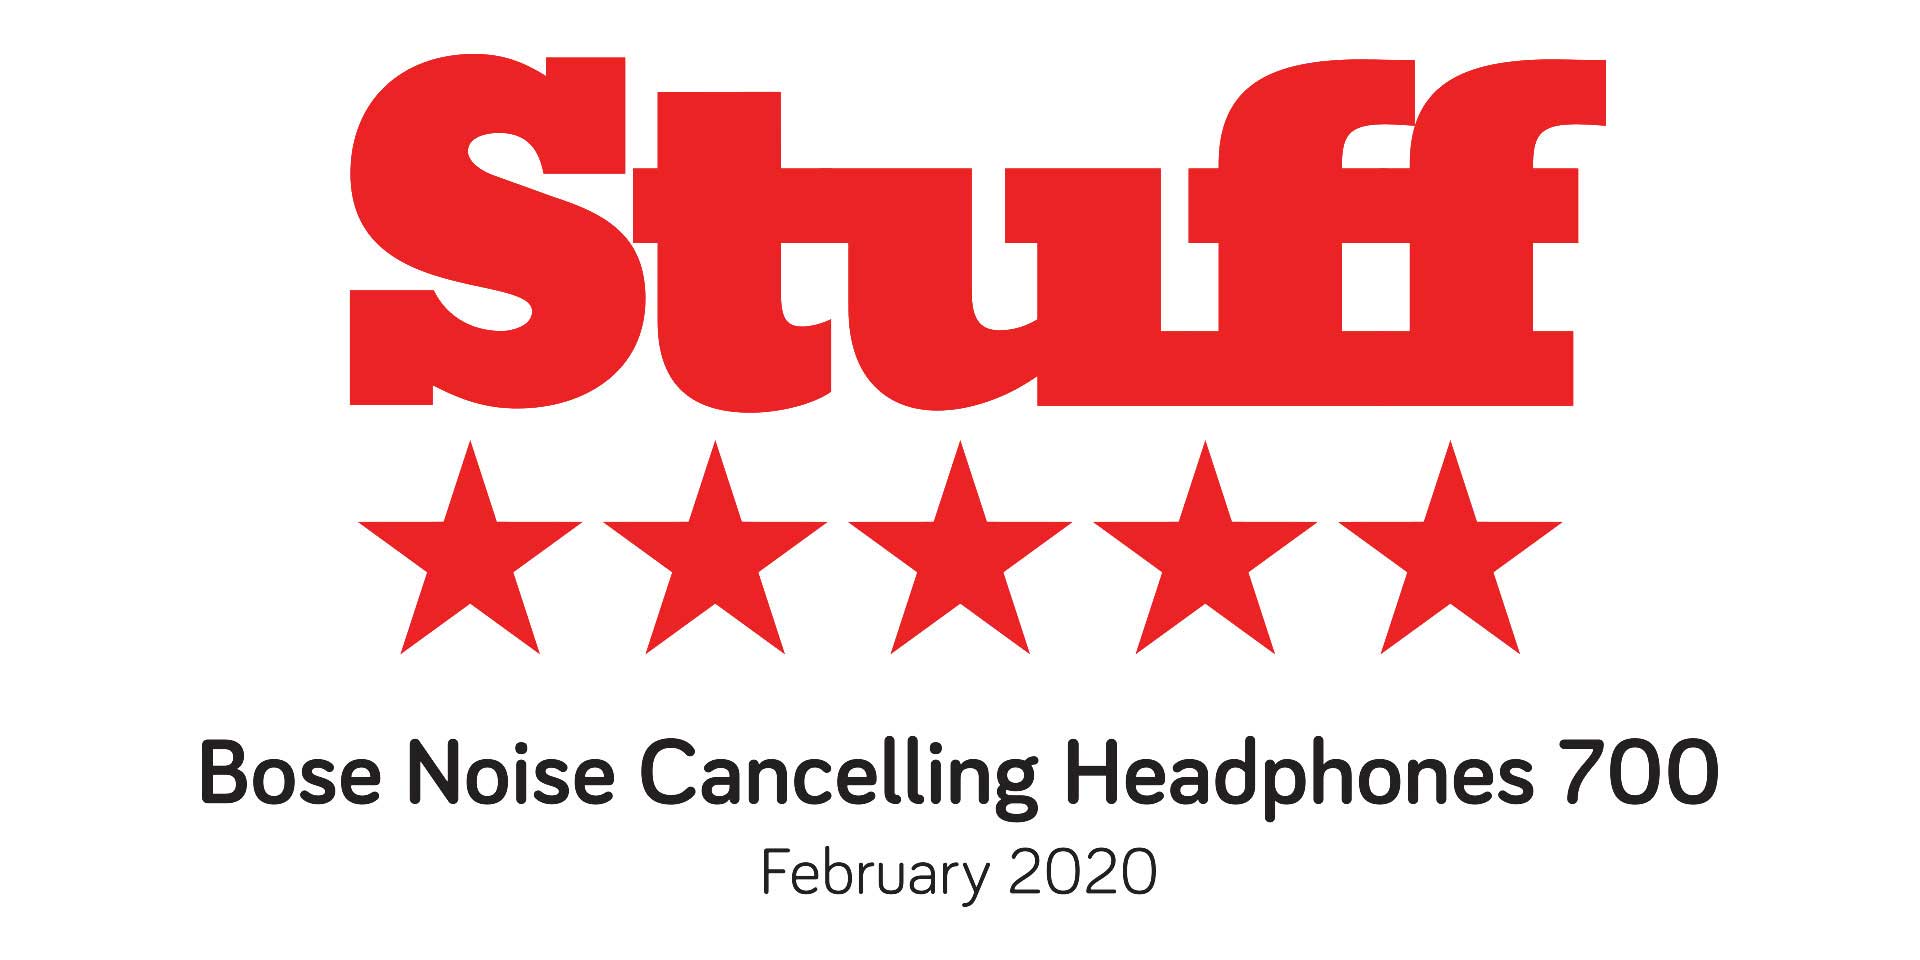 Avis 5 étoiles pour le casque d'annulation Bose Nosie 700 Logo de février 2020